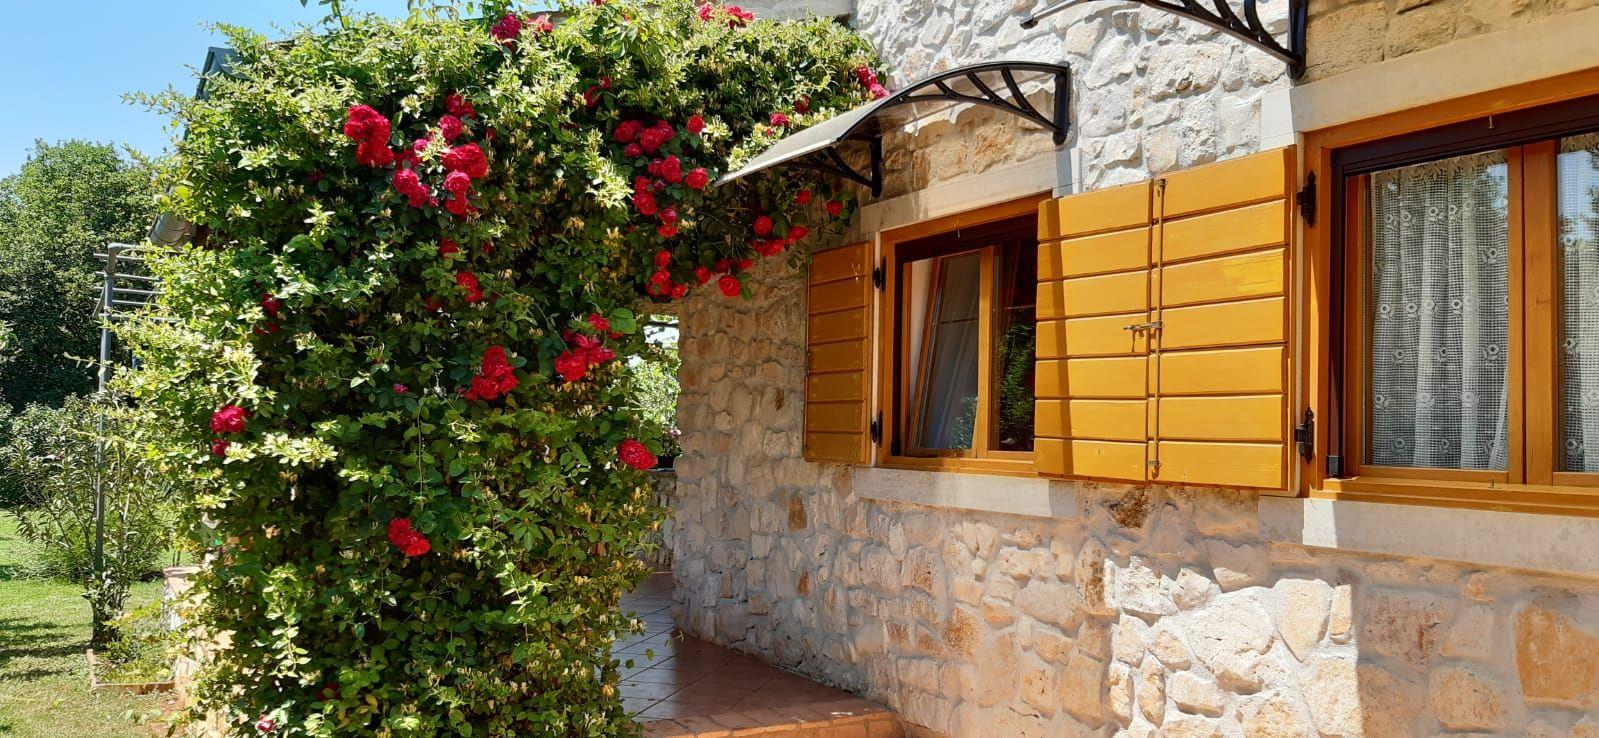 Ferienhaus mit schön angelegtem Garten mit Ol Ferienhaus in Kroatien